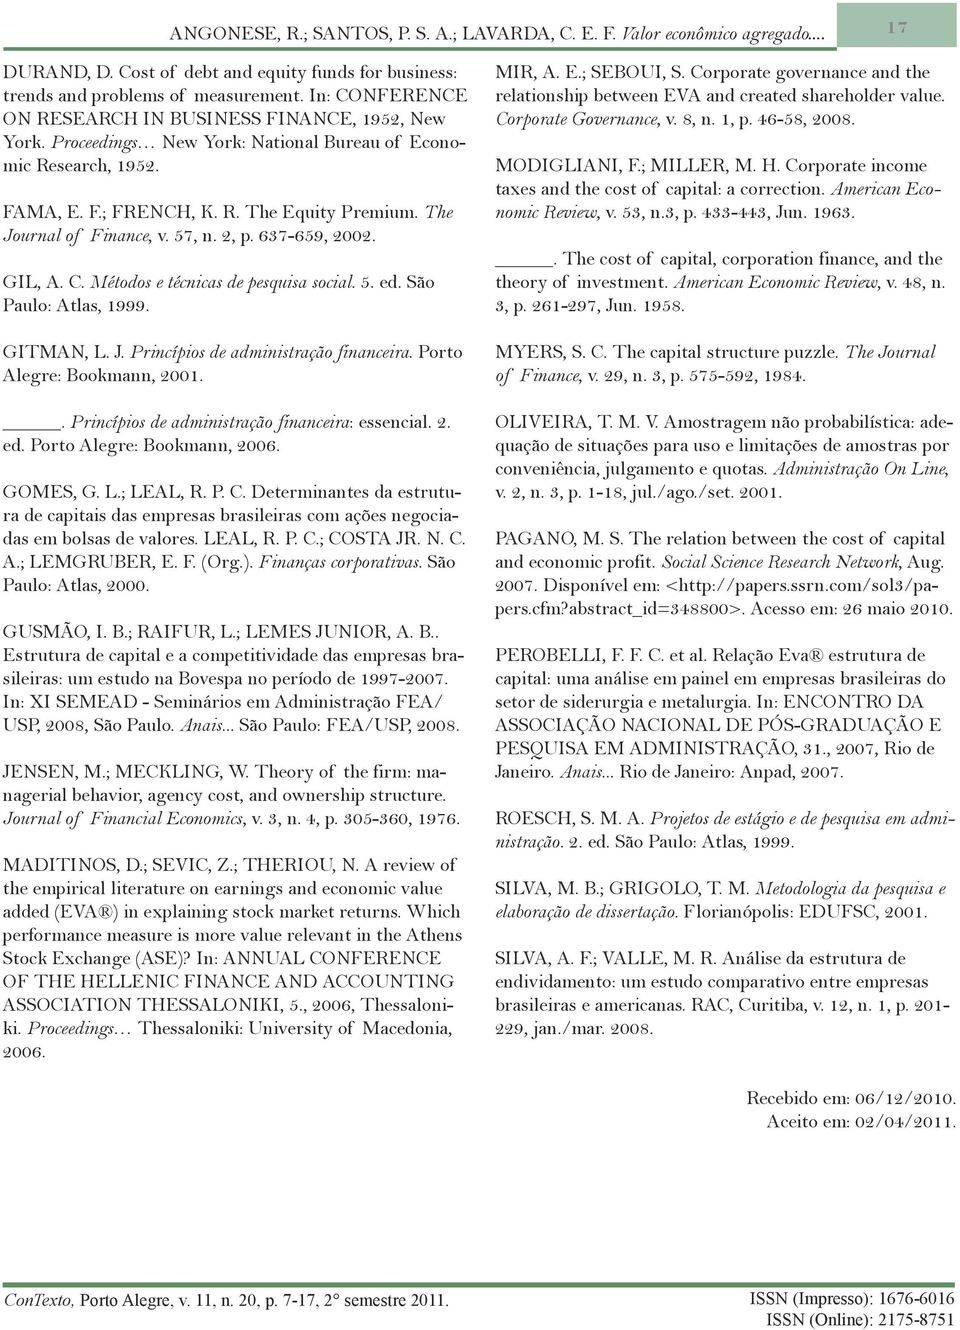 The Journal of Finance, v. 57, n. 2, p. 637-659, 2002. GIL, A. C. Métodos e técnicas de pesquisa social. 5. ed. São Paulo: Atlas, 1999. GITMAN, L. J. Princípios de administração financeira.